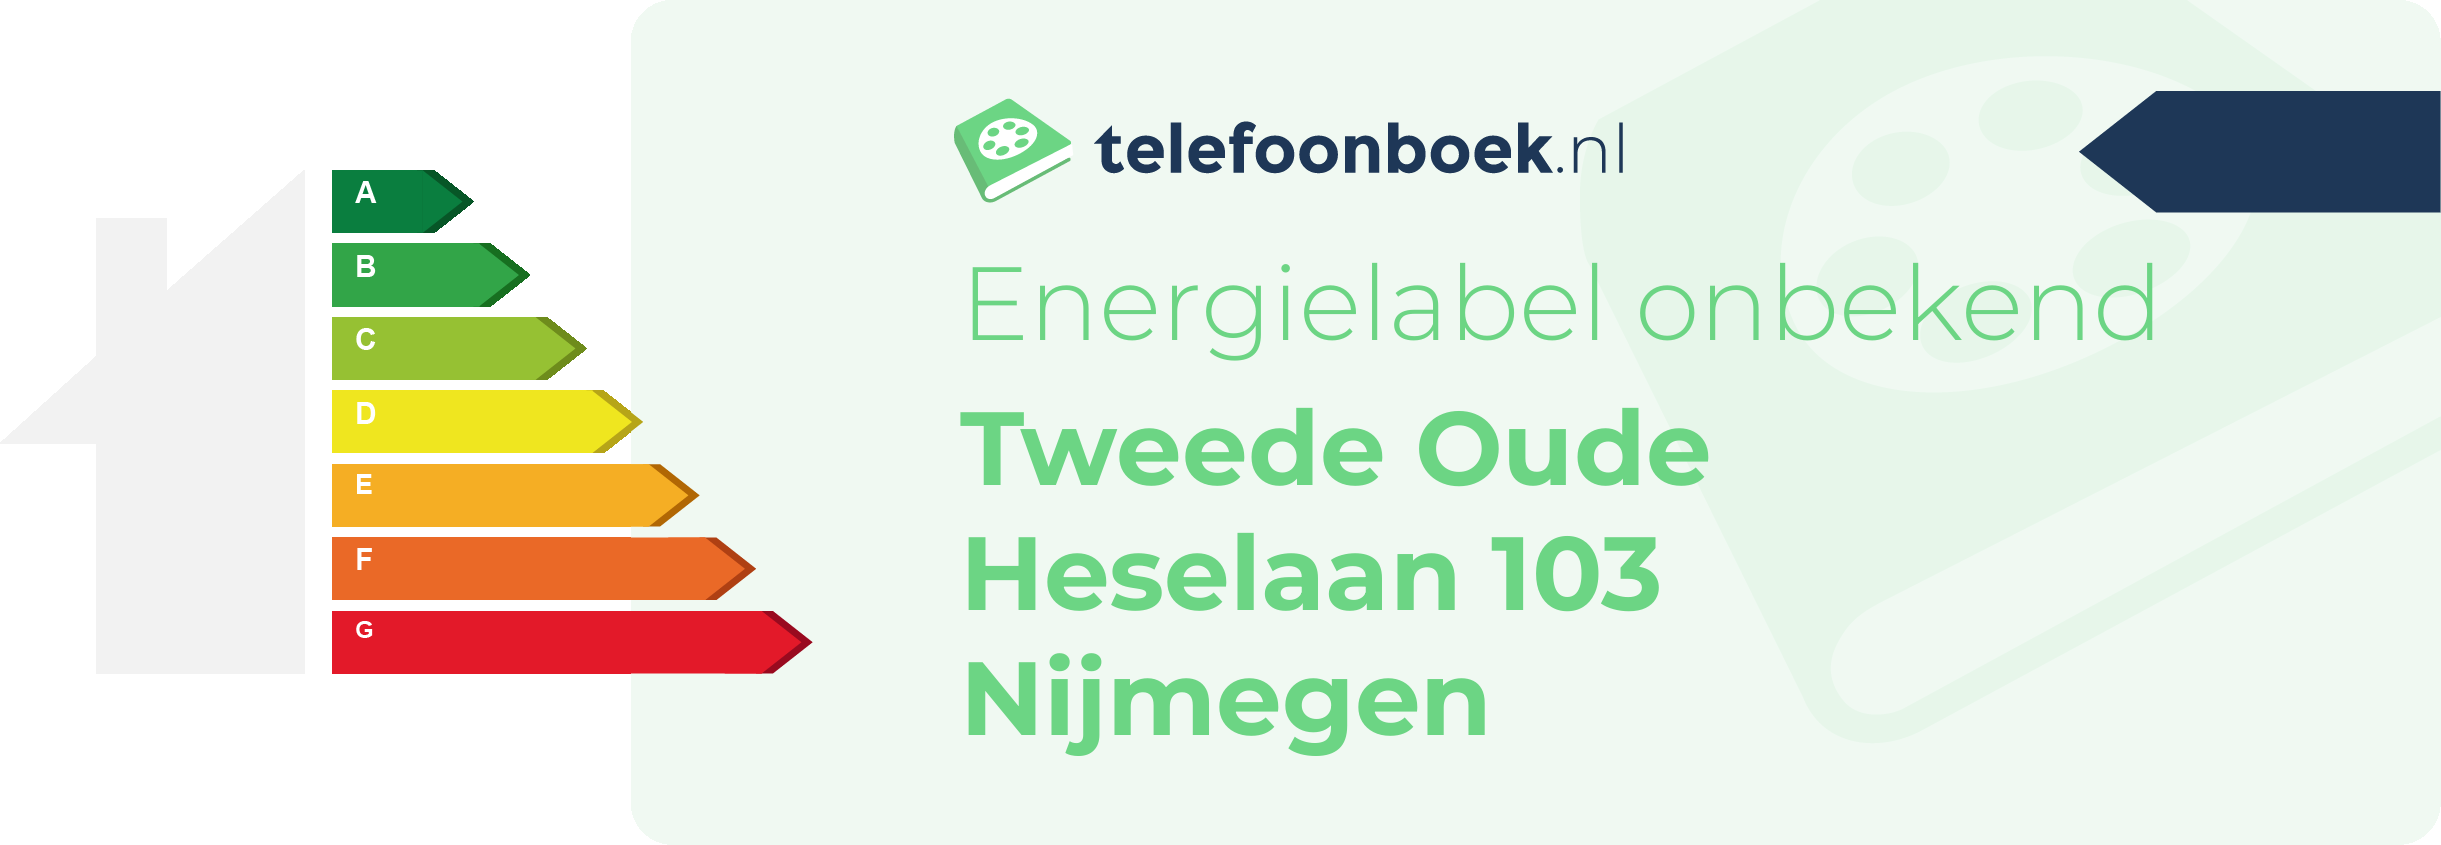 Energielabel Tweede Oude Heselaan 103 Nijmegen